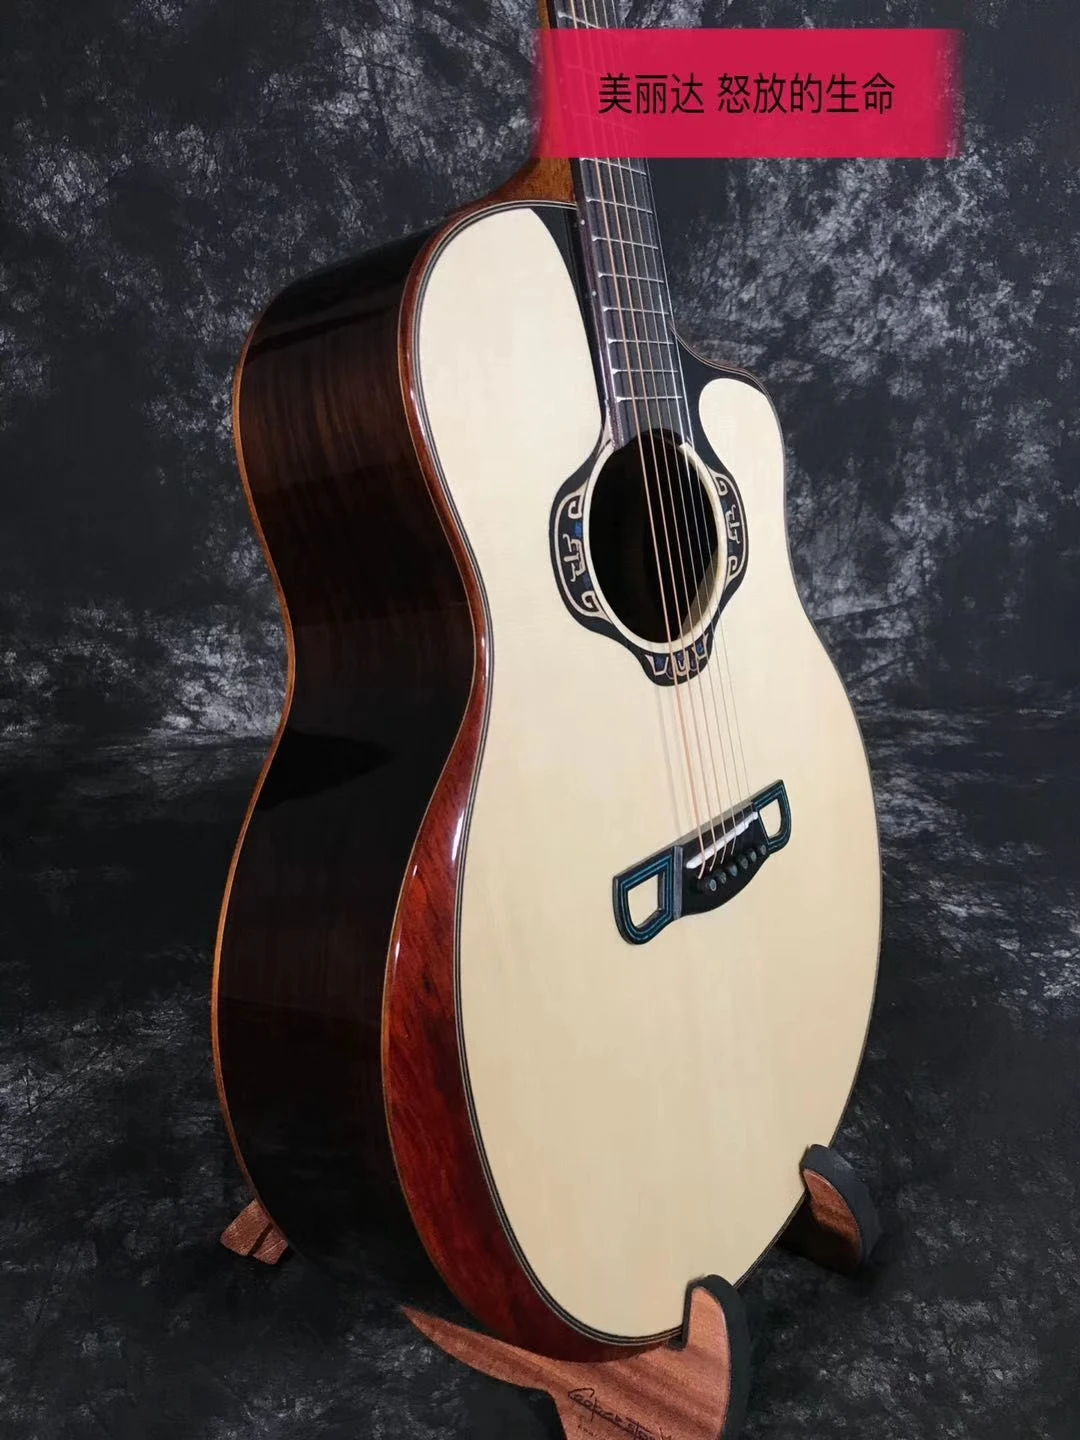 Merida аналоговый жизнь в цвету 4", однотонное платье с длинными рукавами и деревянная акустическая Гитары, акустической гитары